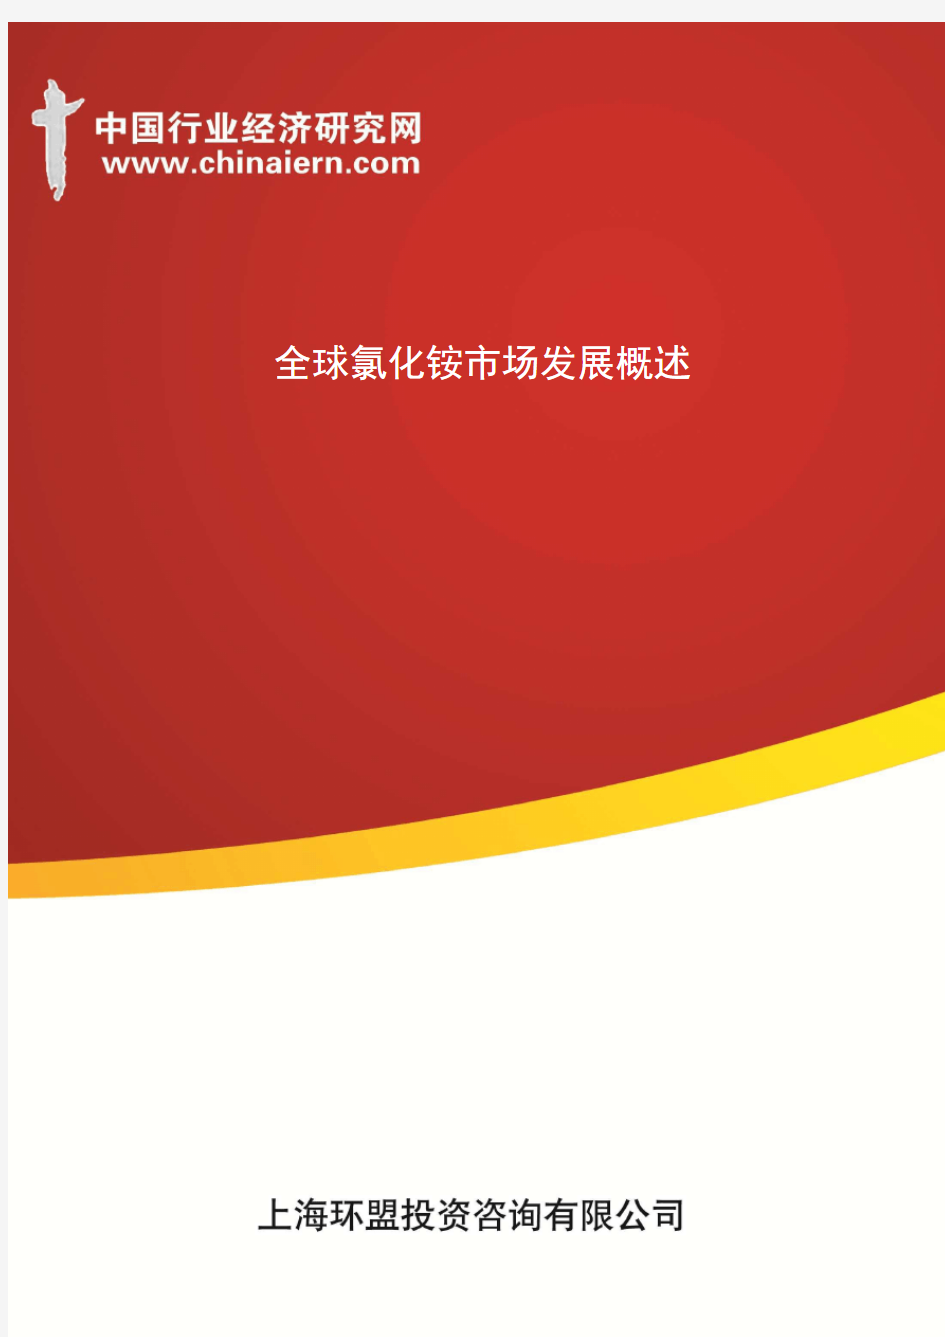 全球氯化铵市场发展概述(上海环盟)